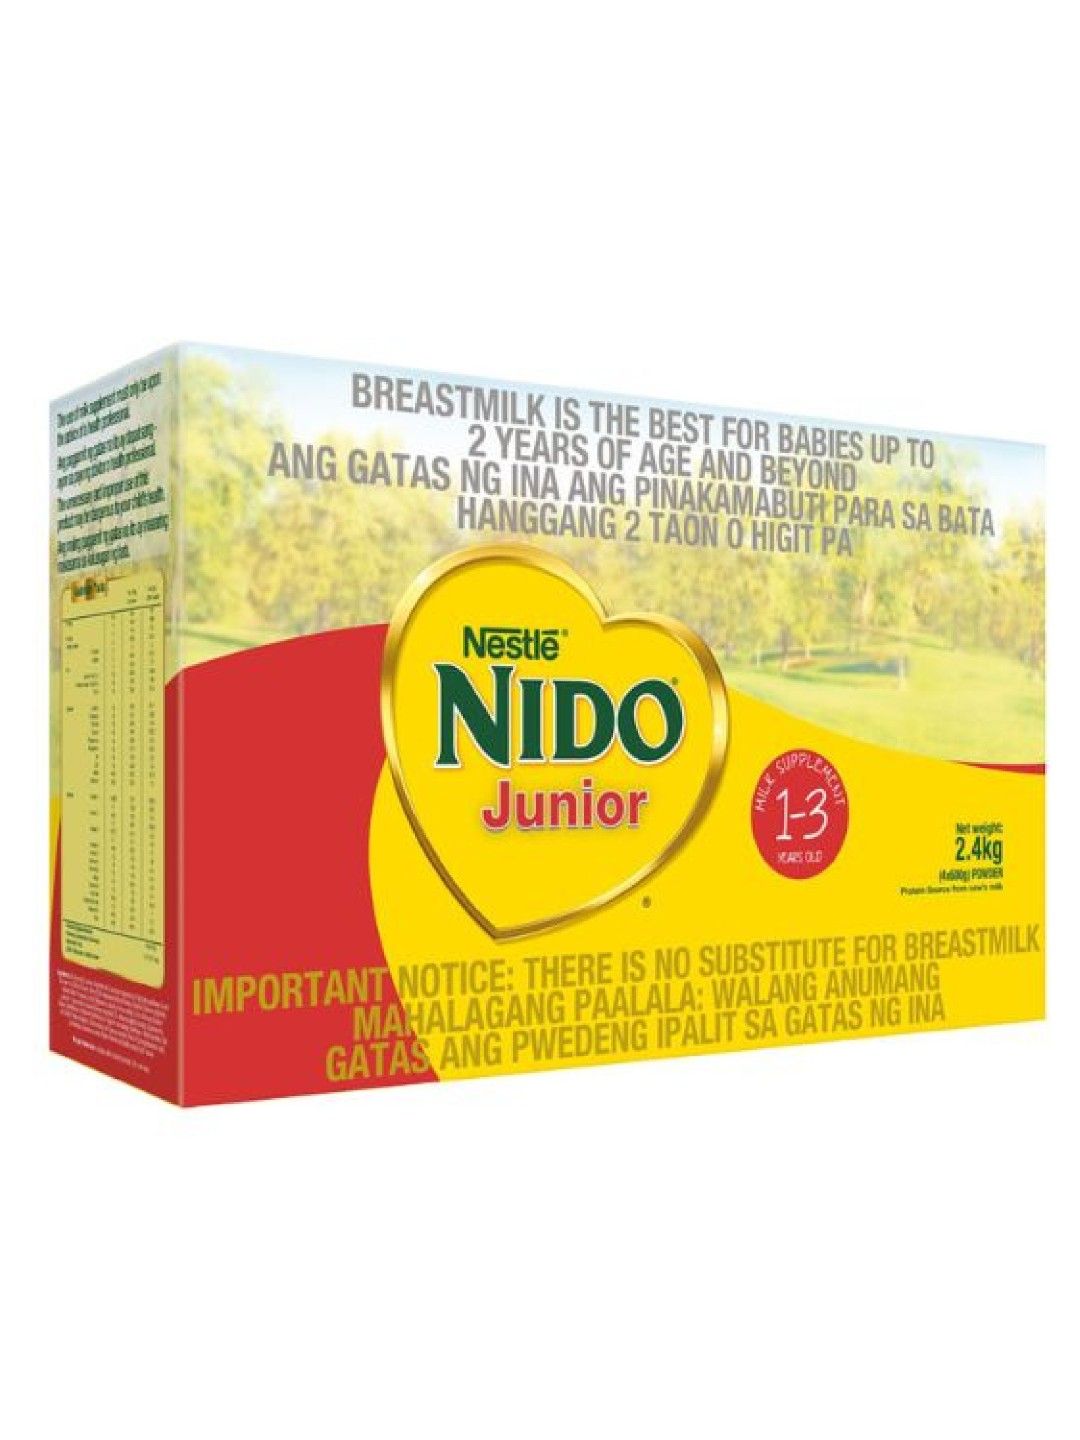 Nido Jr. Junior Advanced Protectus (2.4kg)